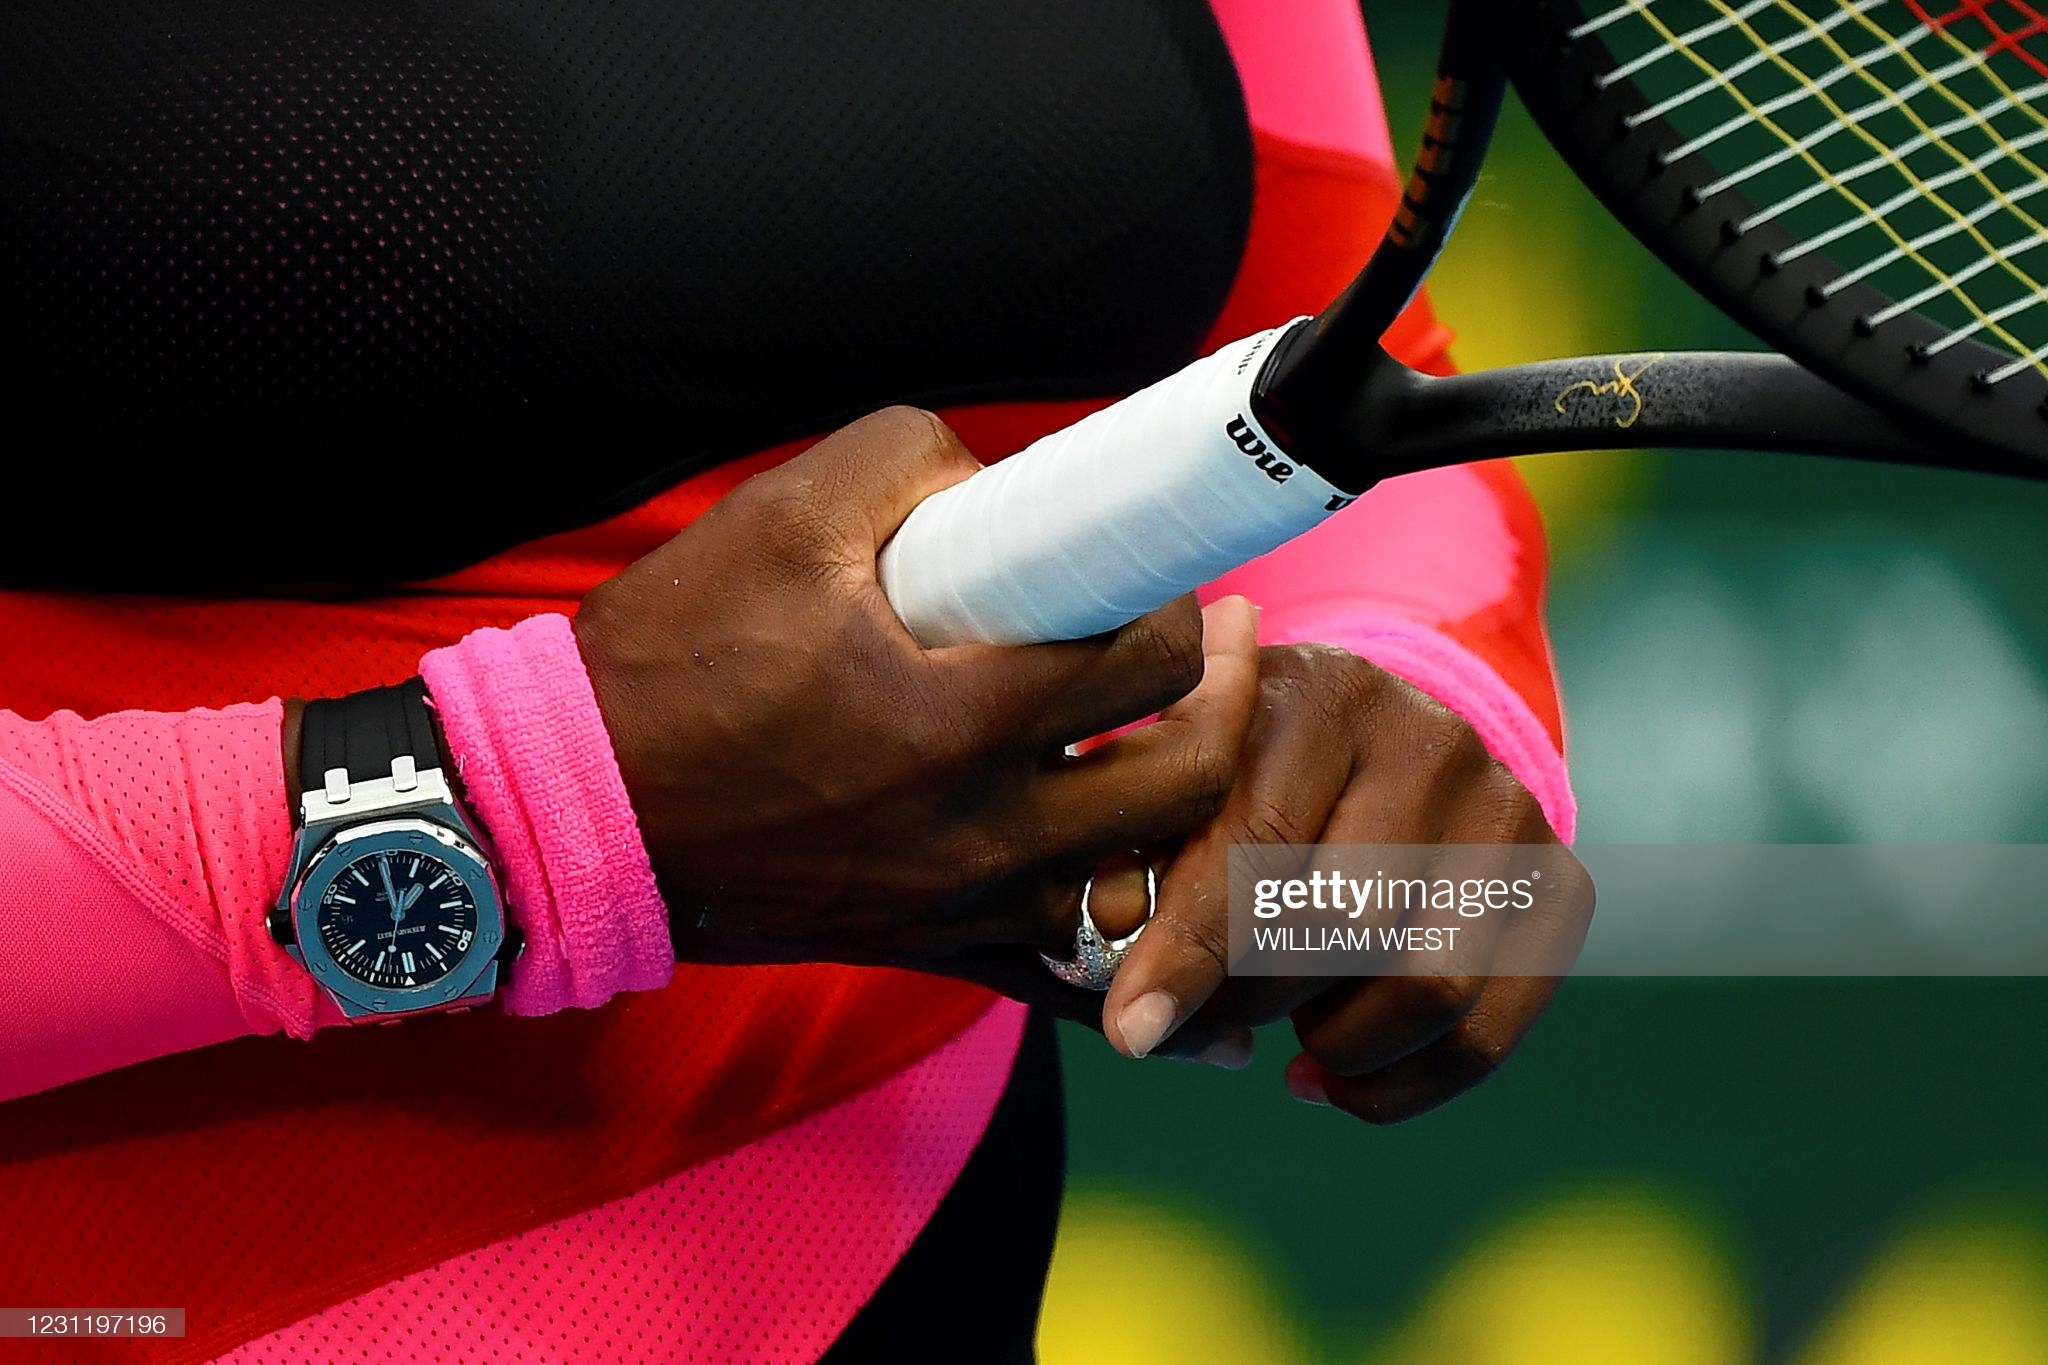 best tennis watches